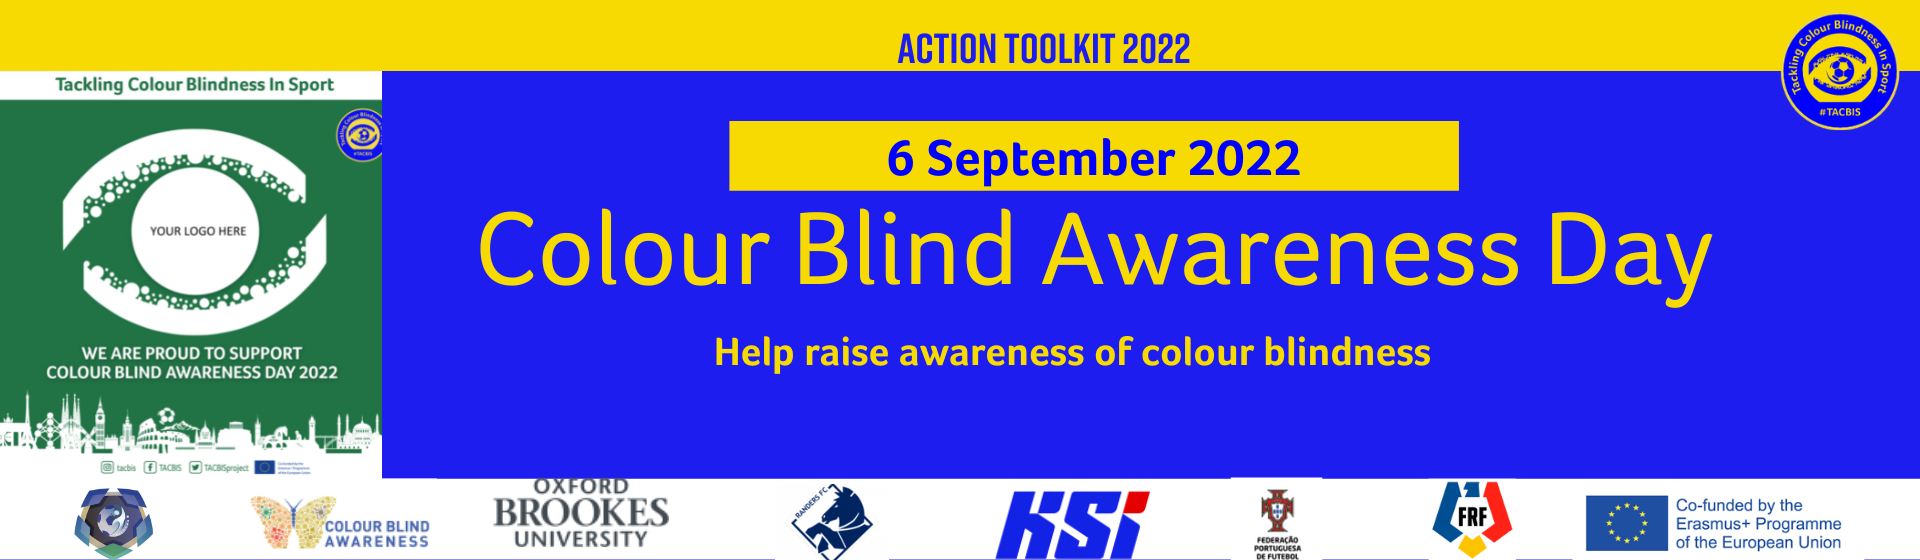 Join us on September 6th: Colour Blind Awareness Day 2022 header